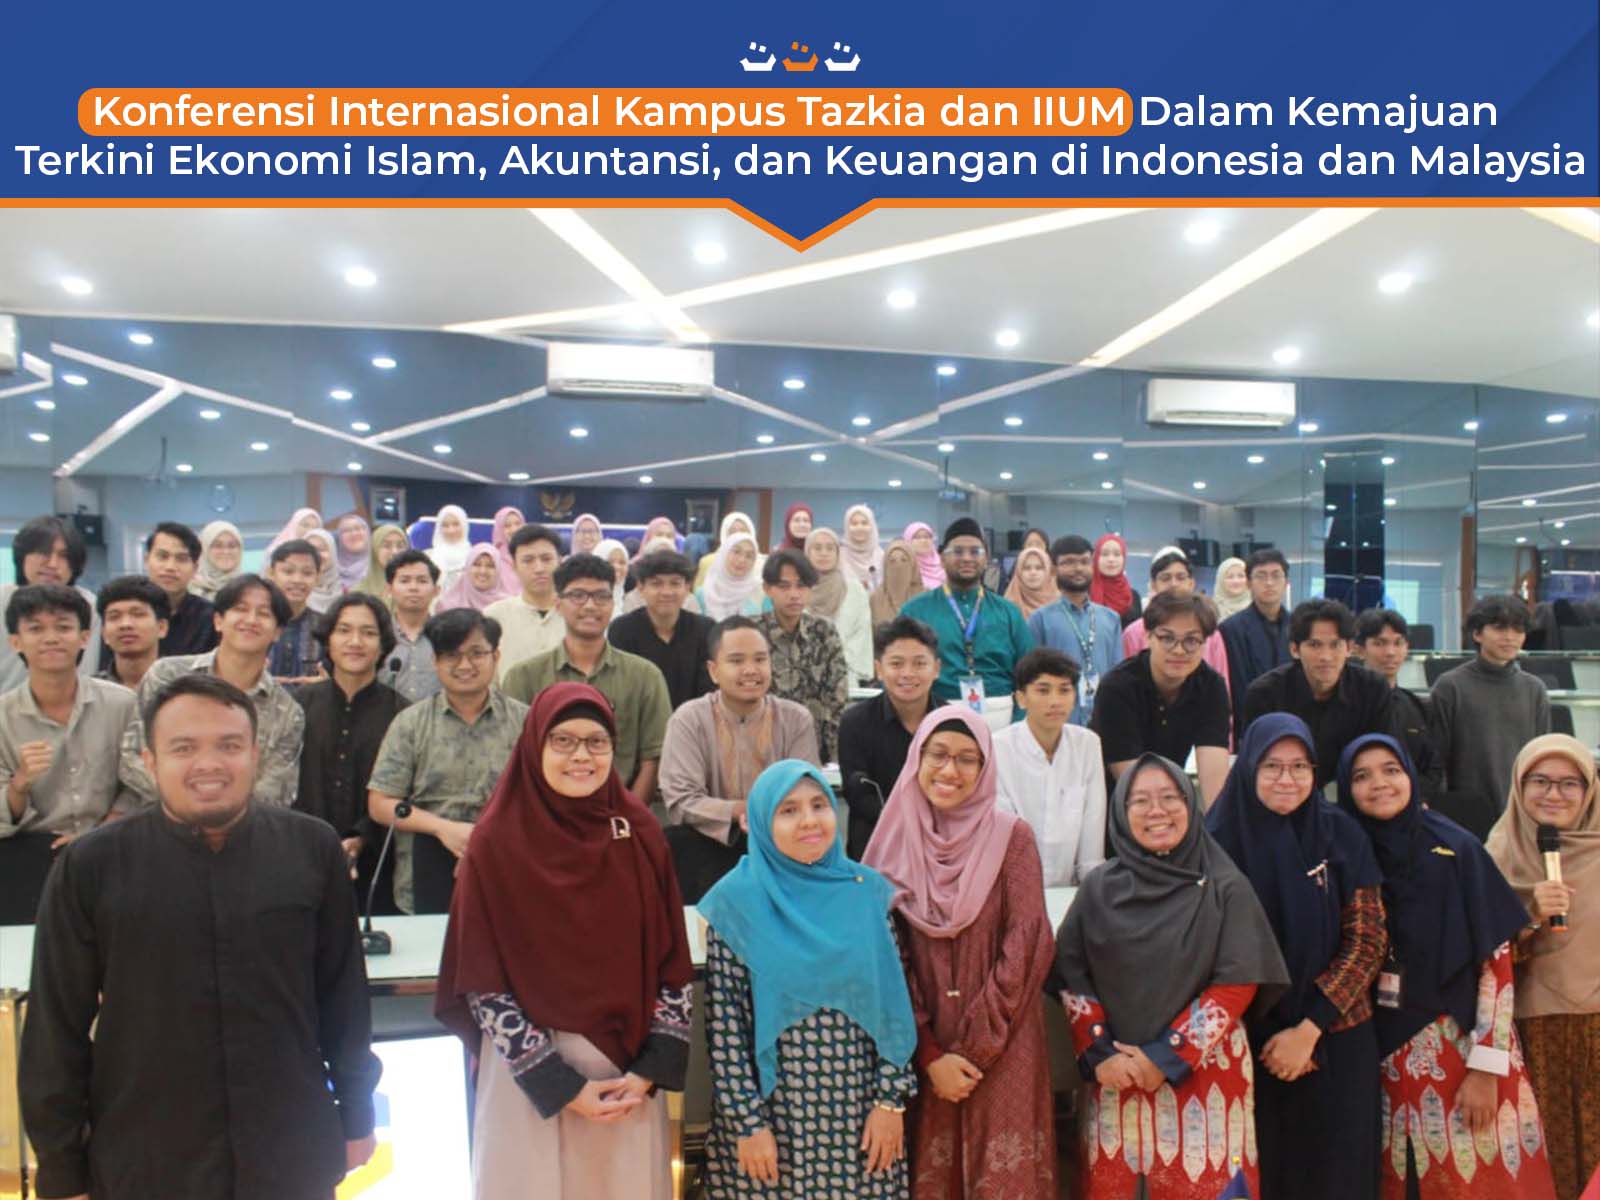 Konferensi Internasional Kampus Tazkia dan IIUM Dalam Kemajuan Terkini Ekonomi Islam, Akuntansi, dan Keuangan di Indonesia dan Malaysia